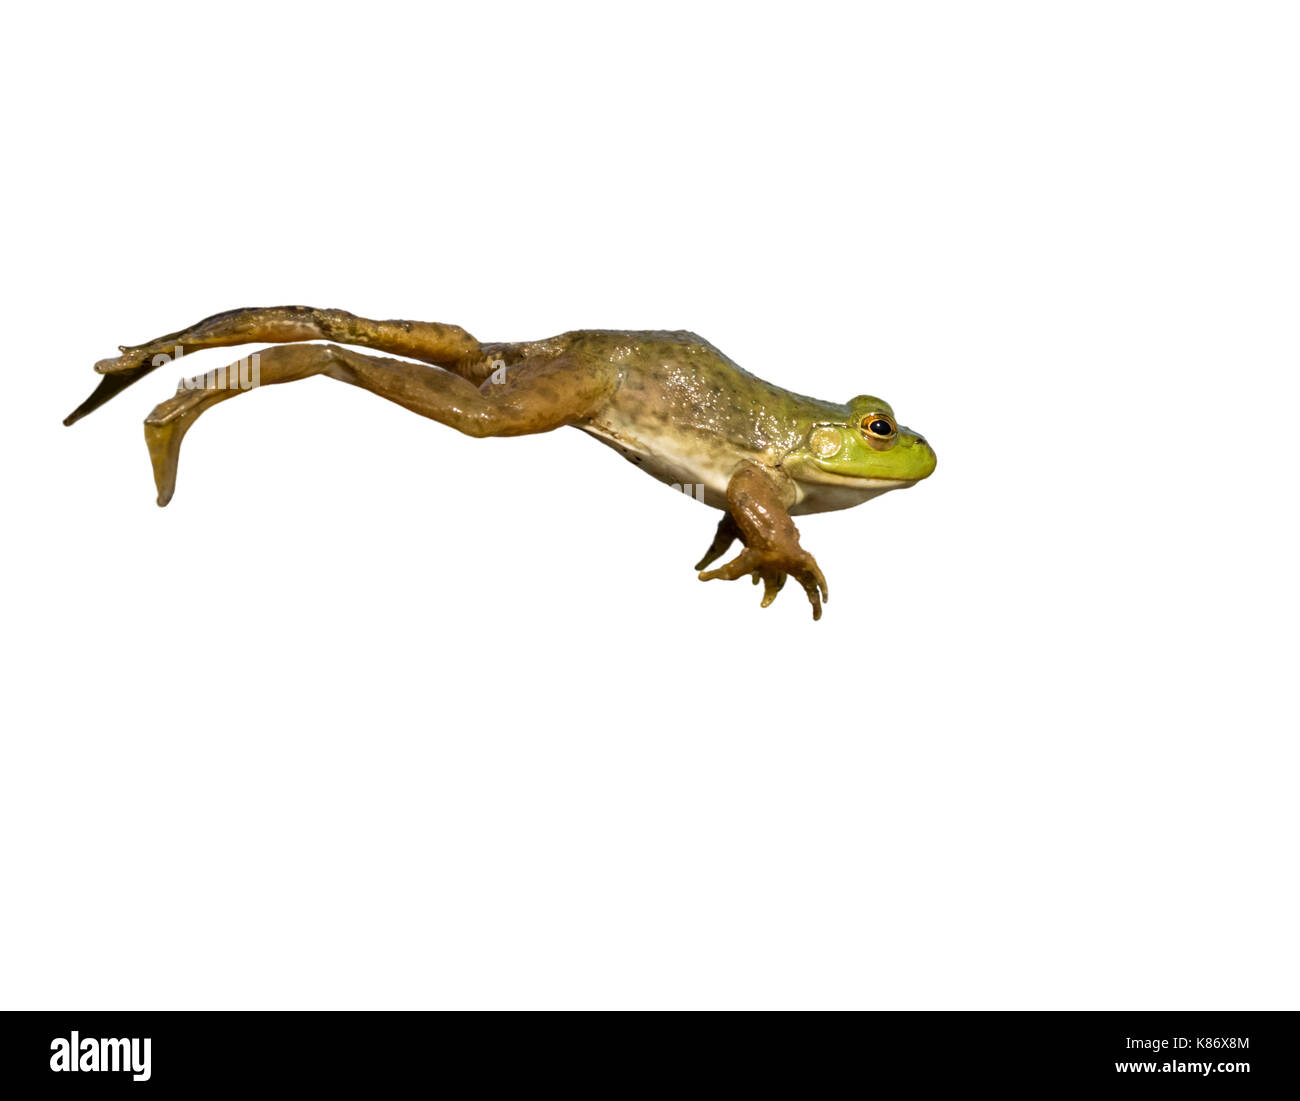 (Lithobates catesbeianus grenouille taureau américain) sautant, isolé sur fond blanc. Banque D'Images